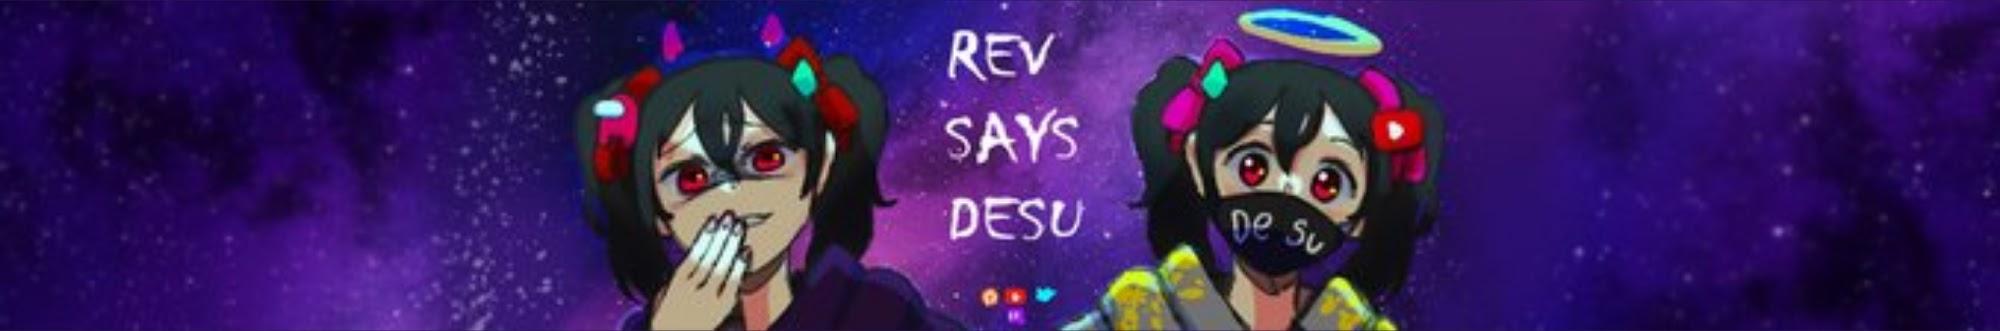 Rev says desu